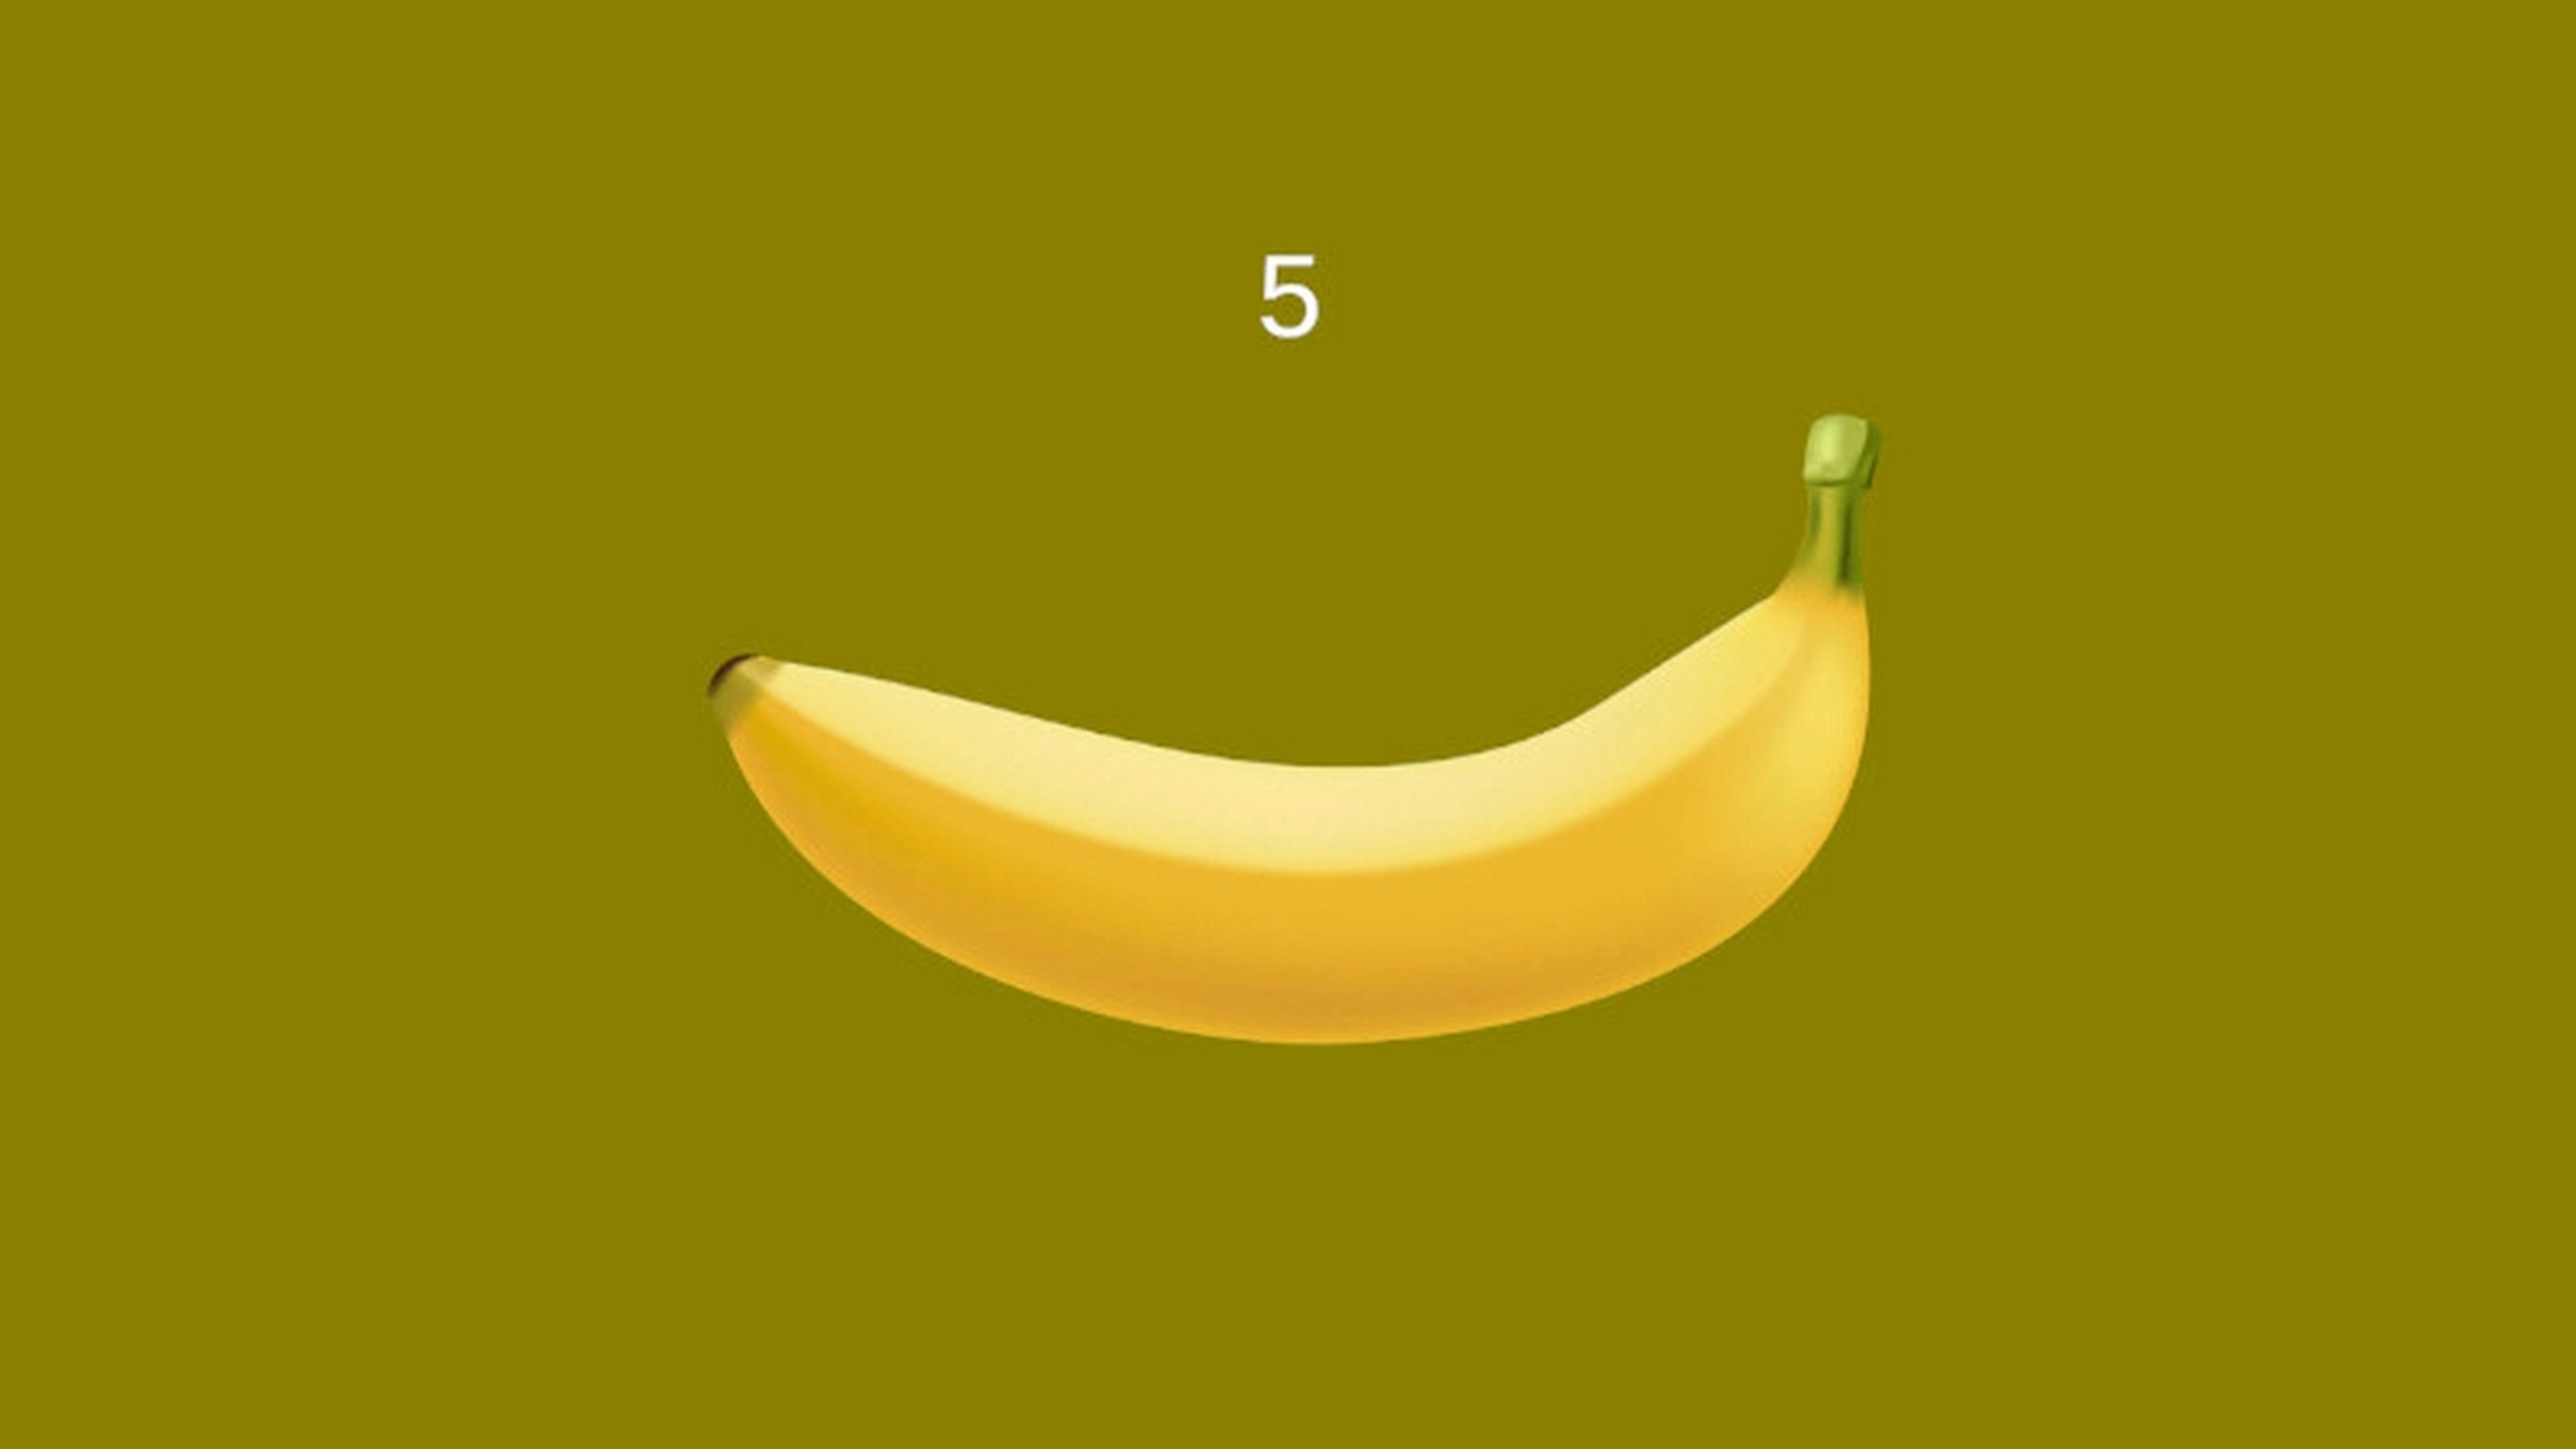 Por qué un juego en el que solo hay que tocar una banana, es el segundo más jugado de Steam